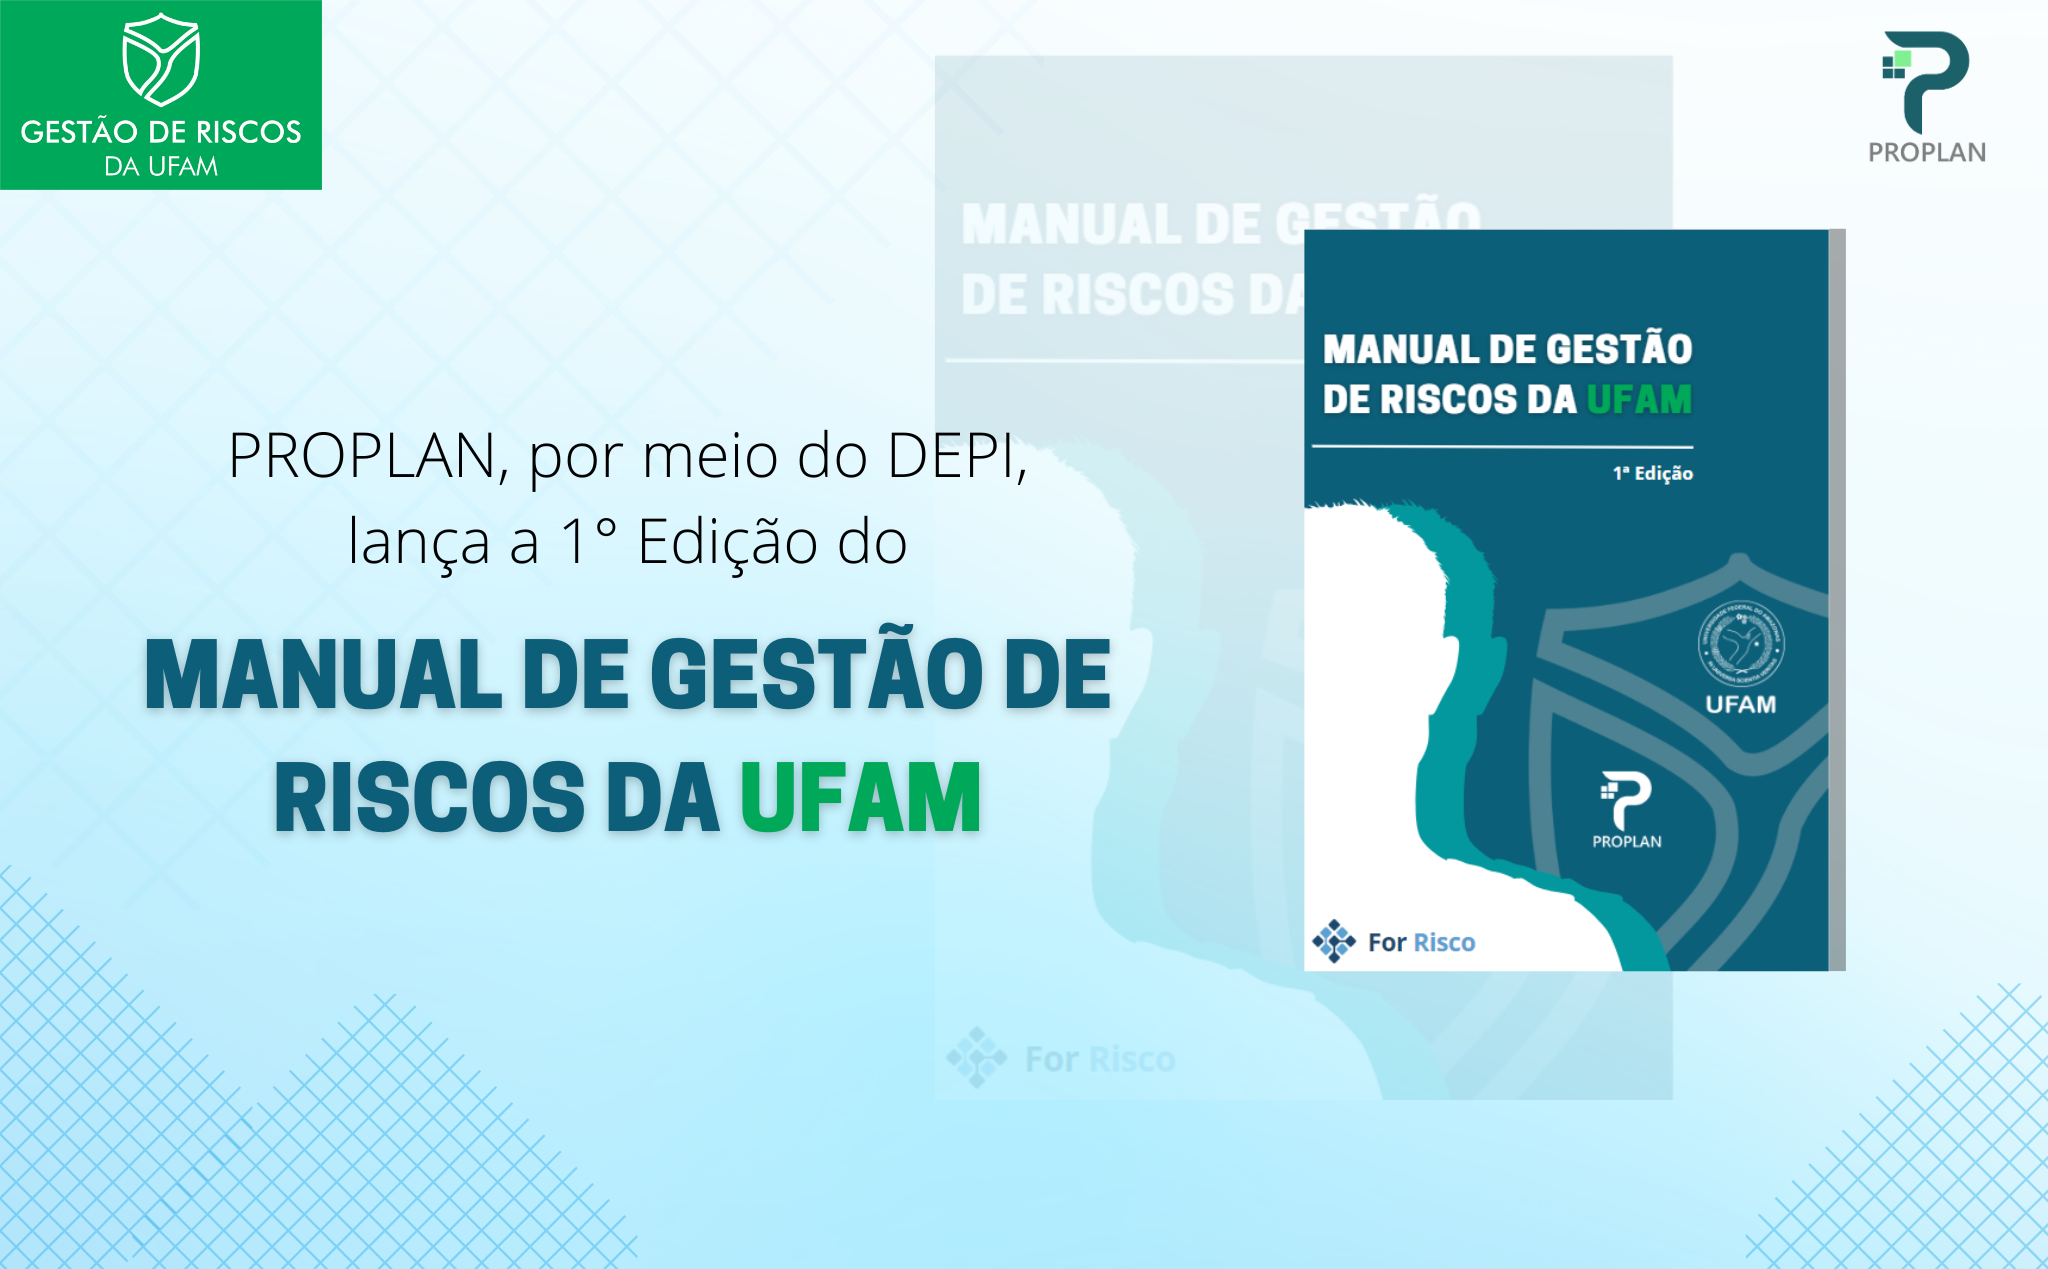 PROPLAN lança o Manual de Gestão de Riscos da UFAM 1ª edição